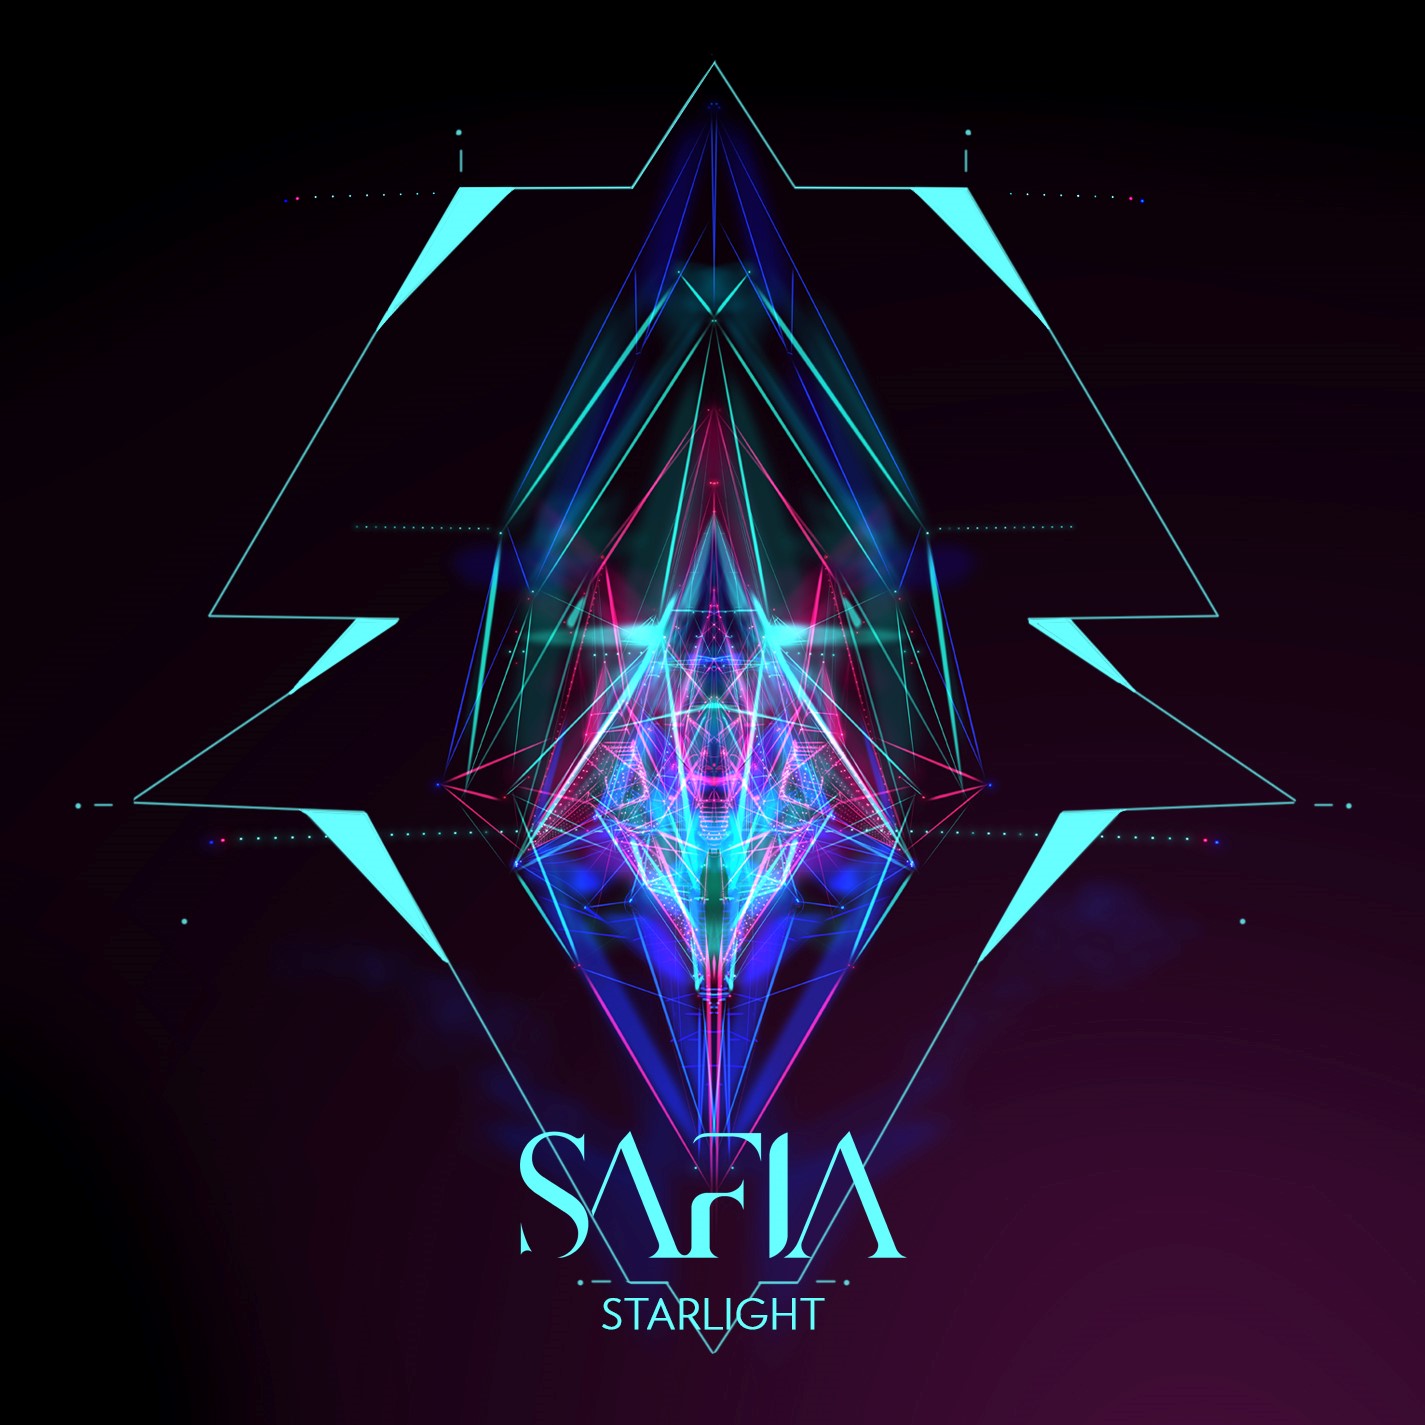 SAFIA - "Starlight" (Single)